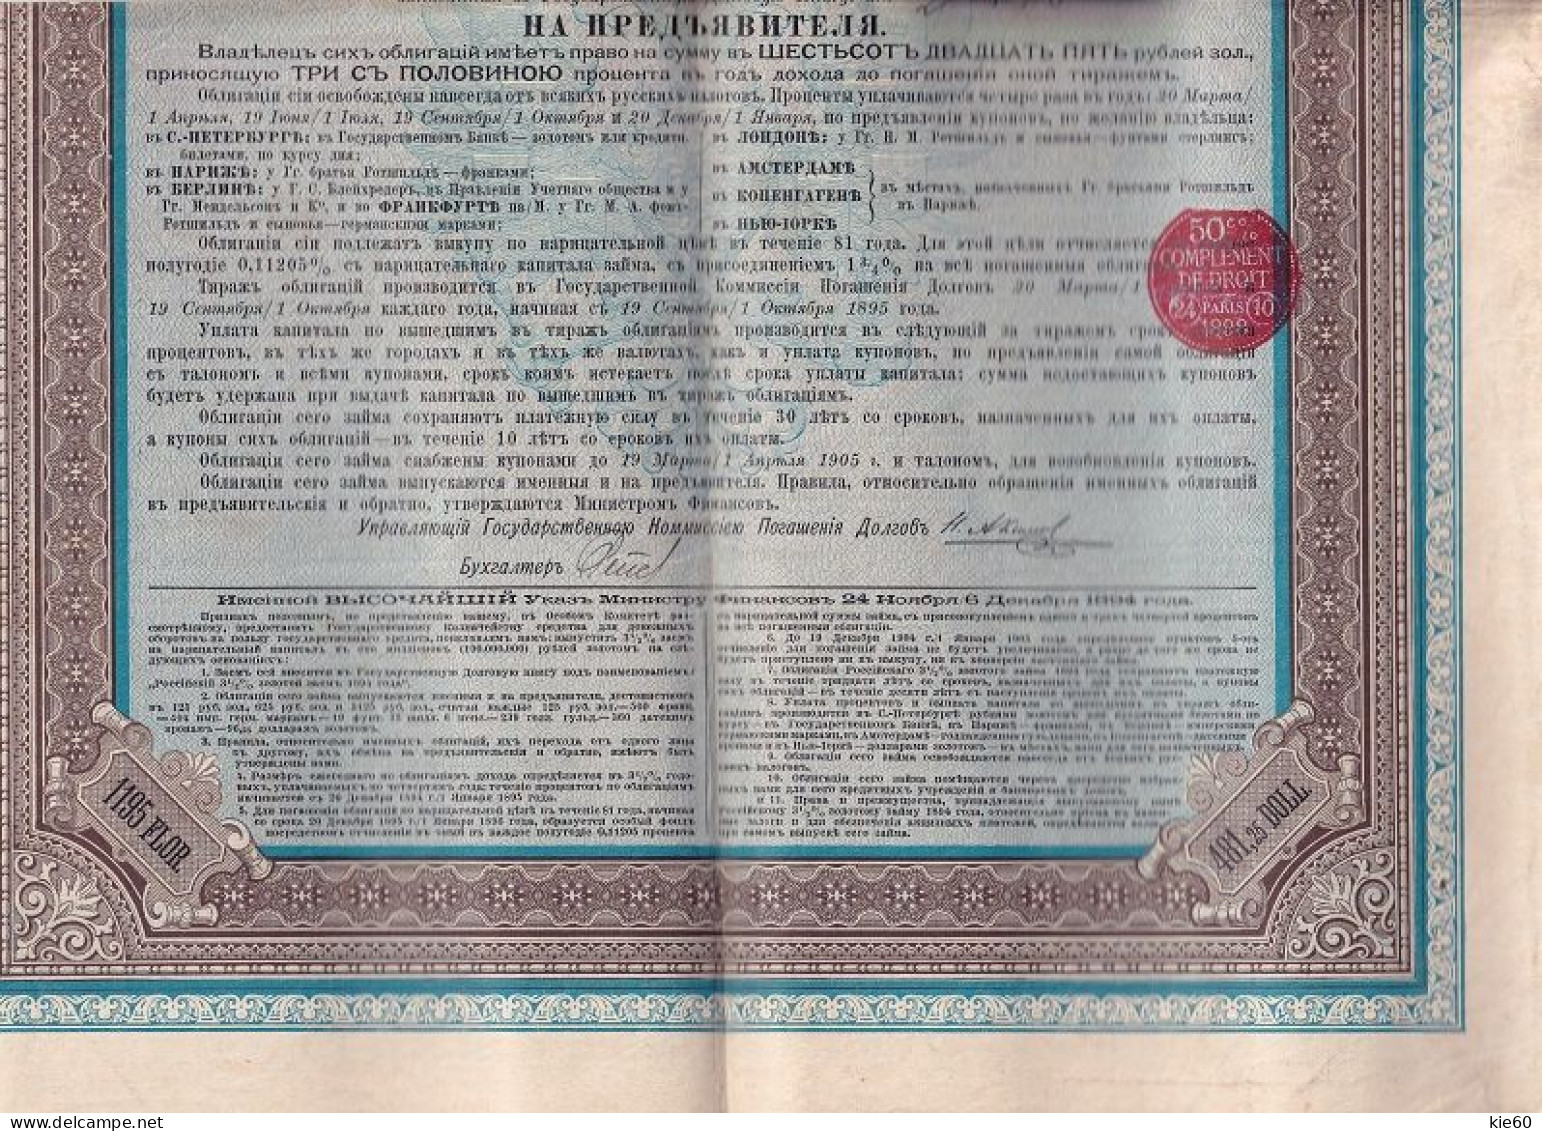 Russia  - 1894 -  625 Rubles  - 3,5%  Gold Loan - Rusia